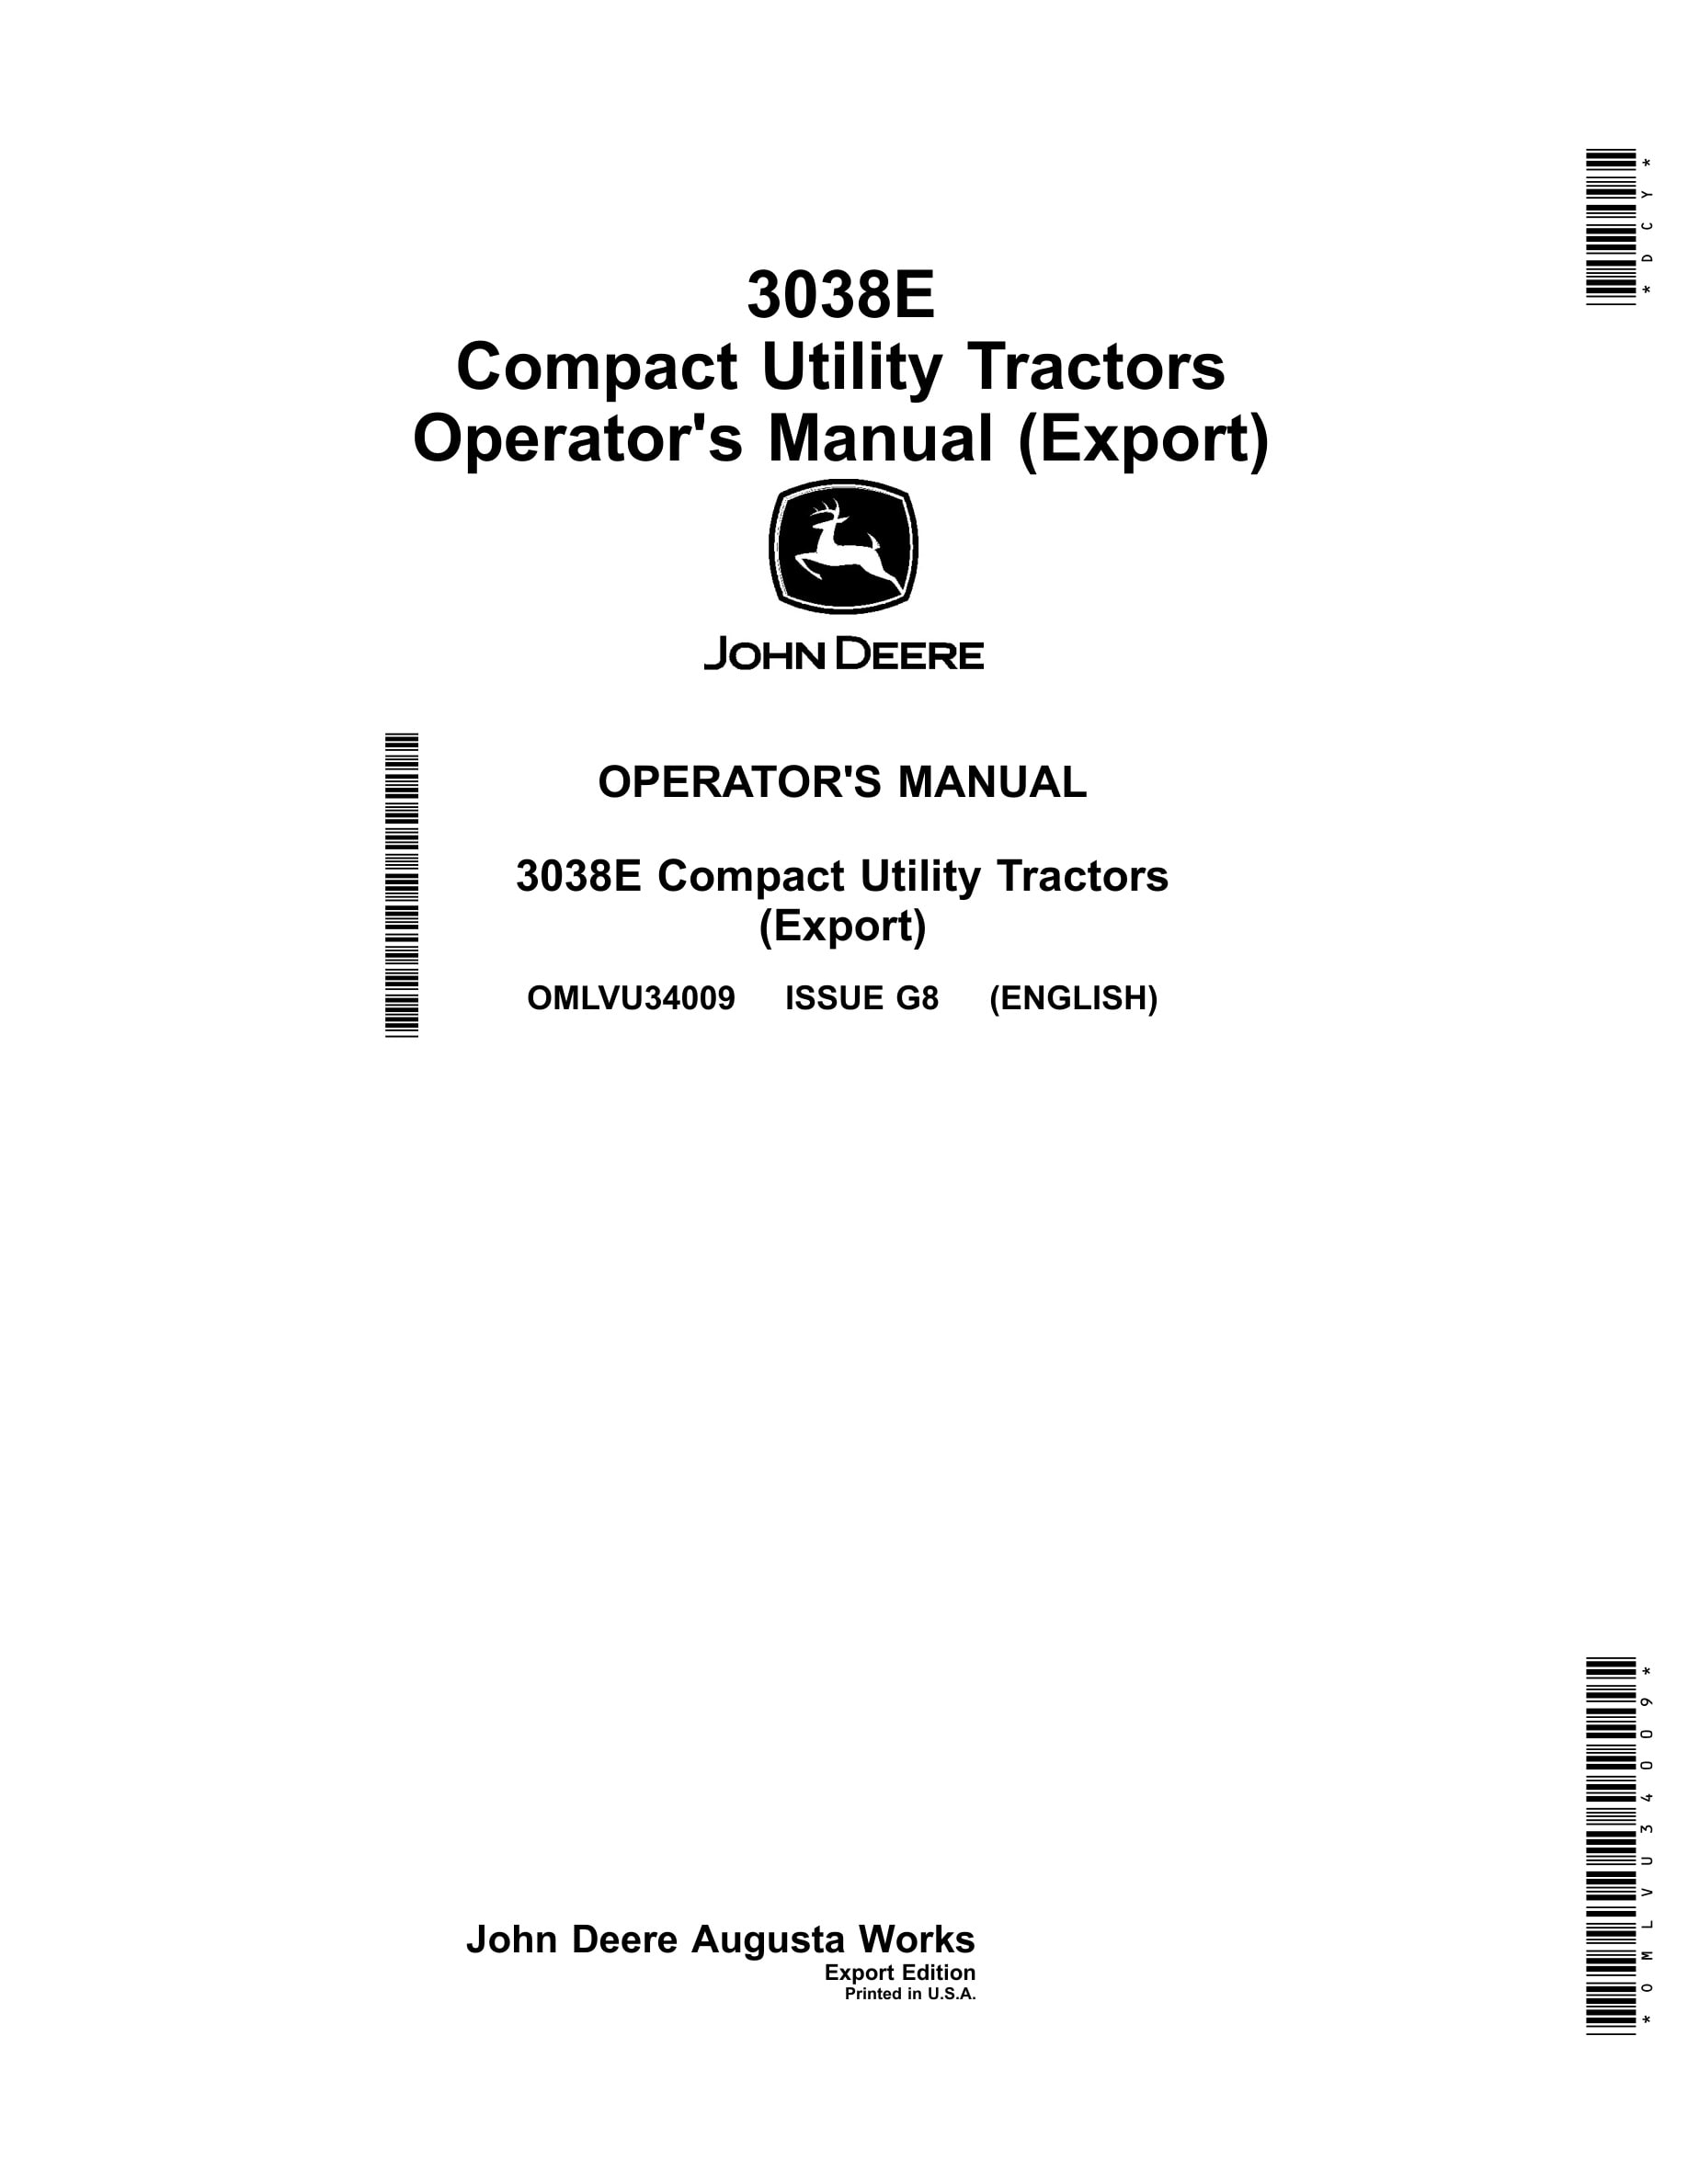 John Deere 3038e Compact Utility Tractors Operator Manuals OMLVU34009-1